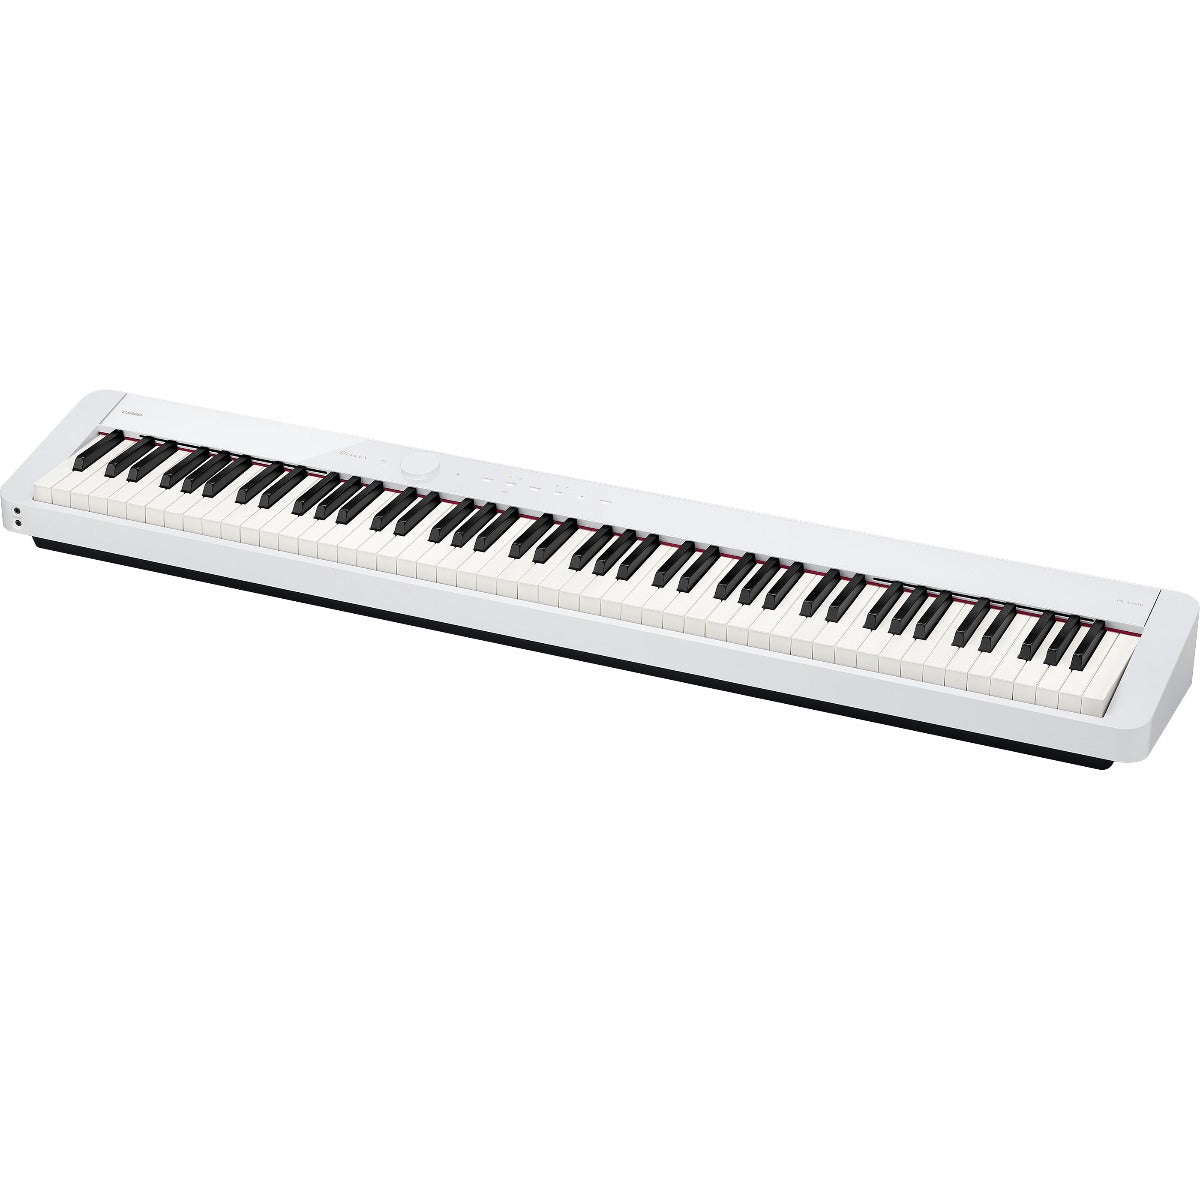 Casio Privia PX-S1100 Digital Piano - White COMPLETE HOME BUNDLE PLUS